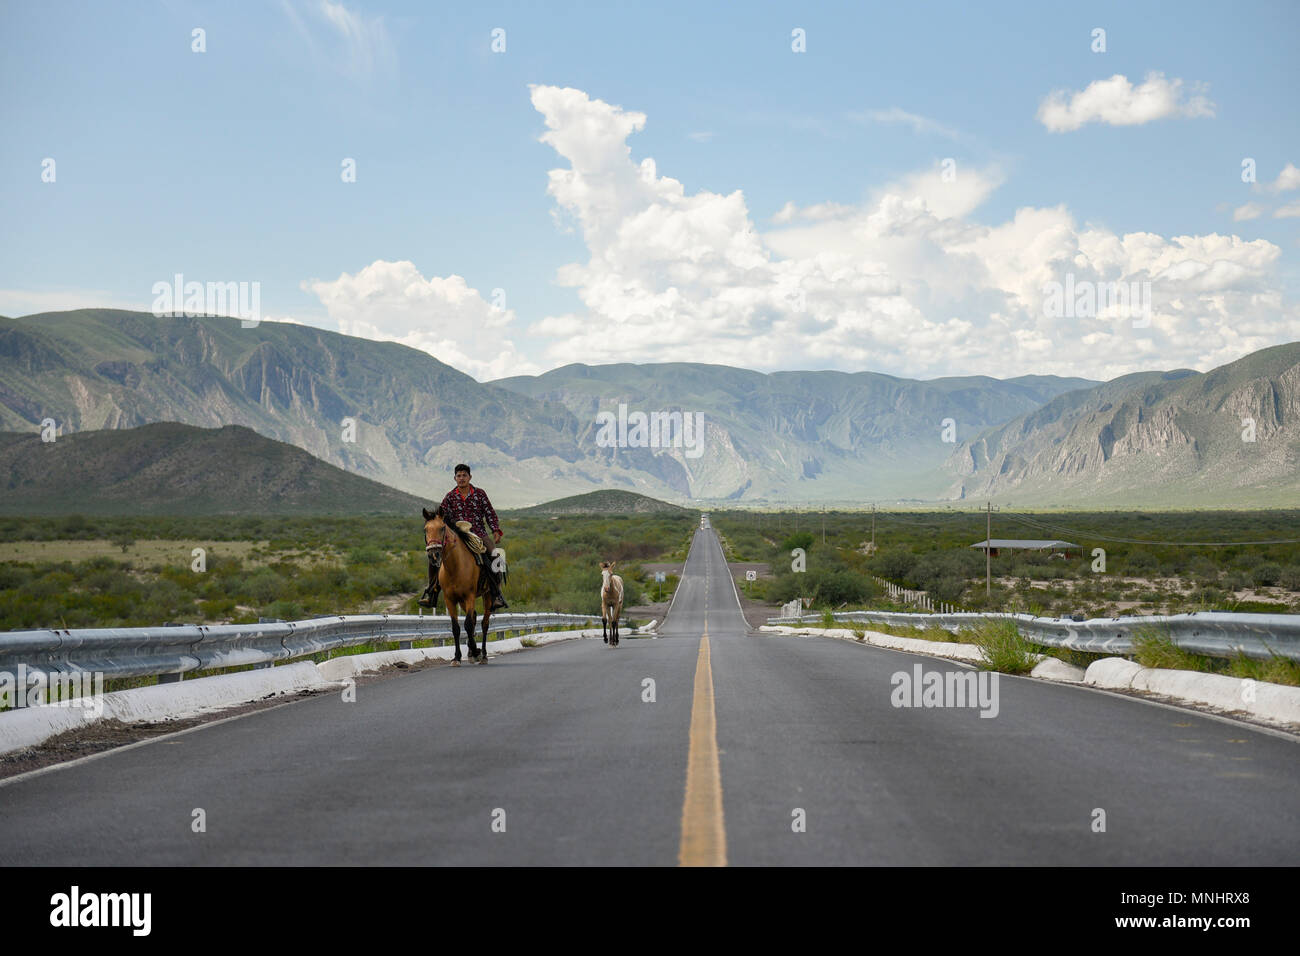 Vista frontal del hombre a caballo a lo largo de la carretera con las montañas en el fondo, Durango, México Foto de stock